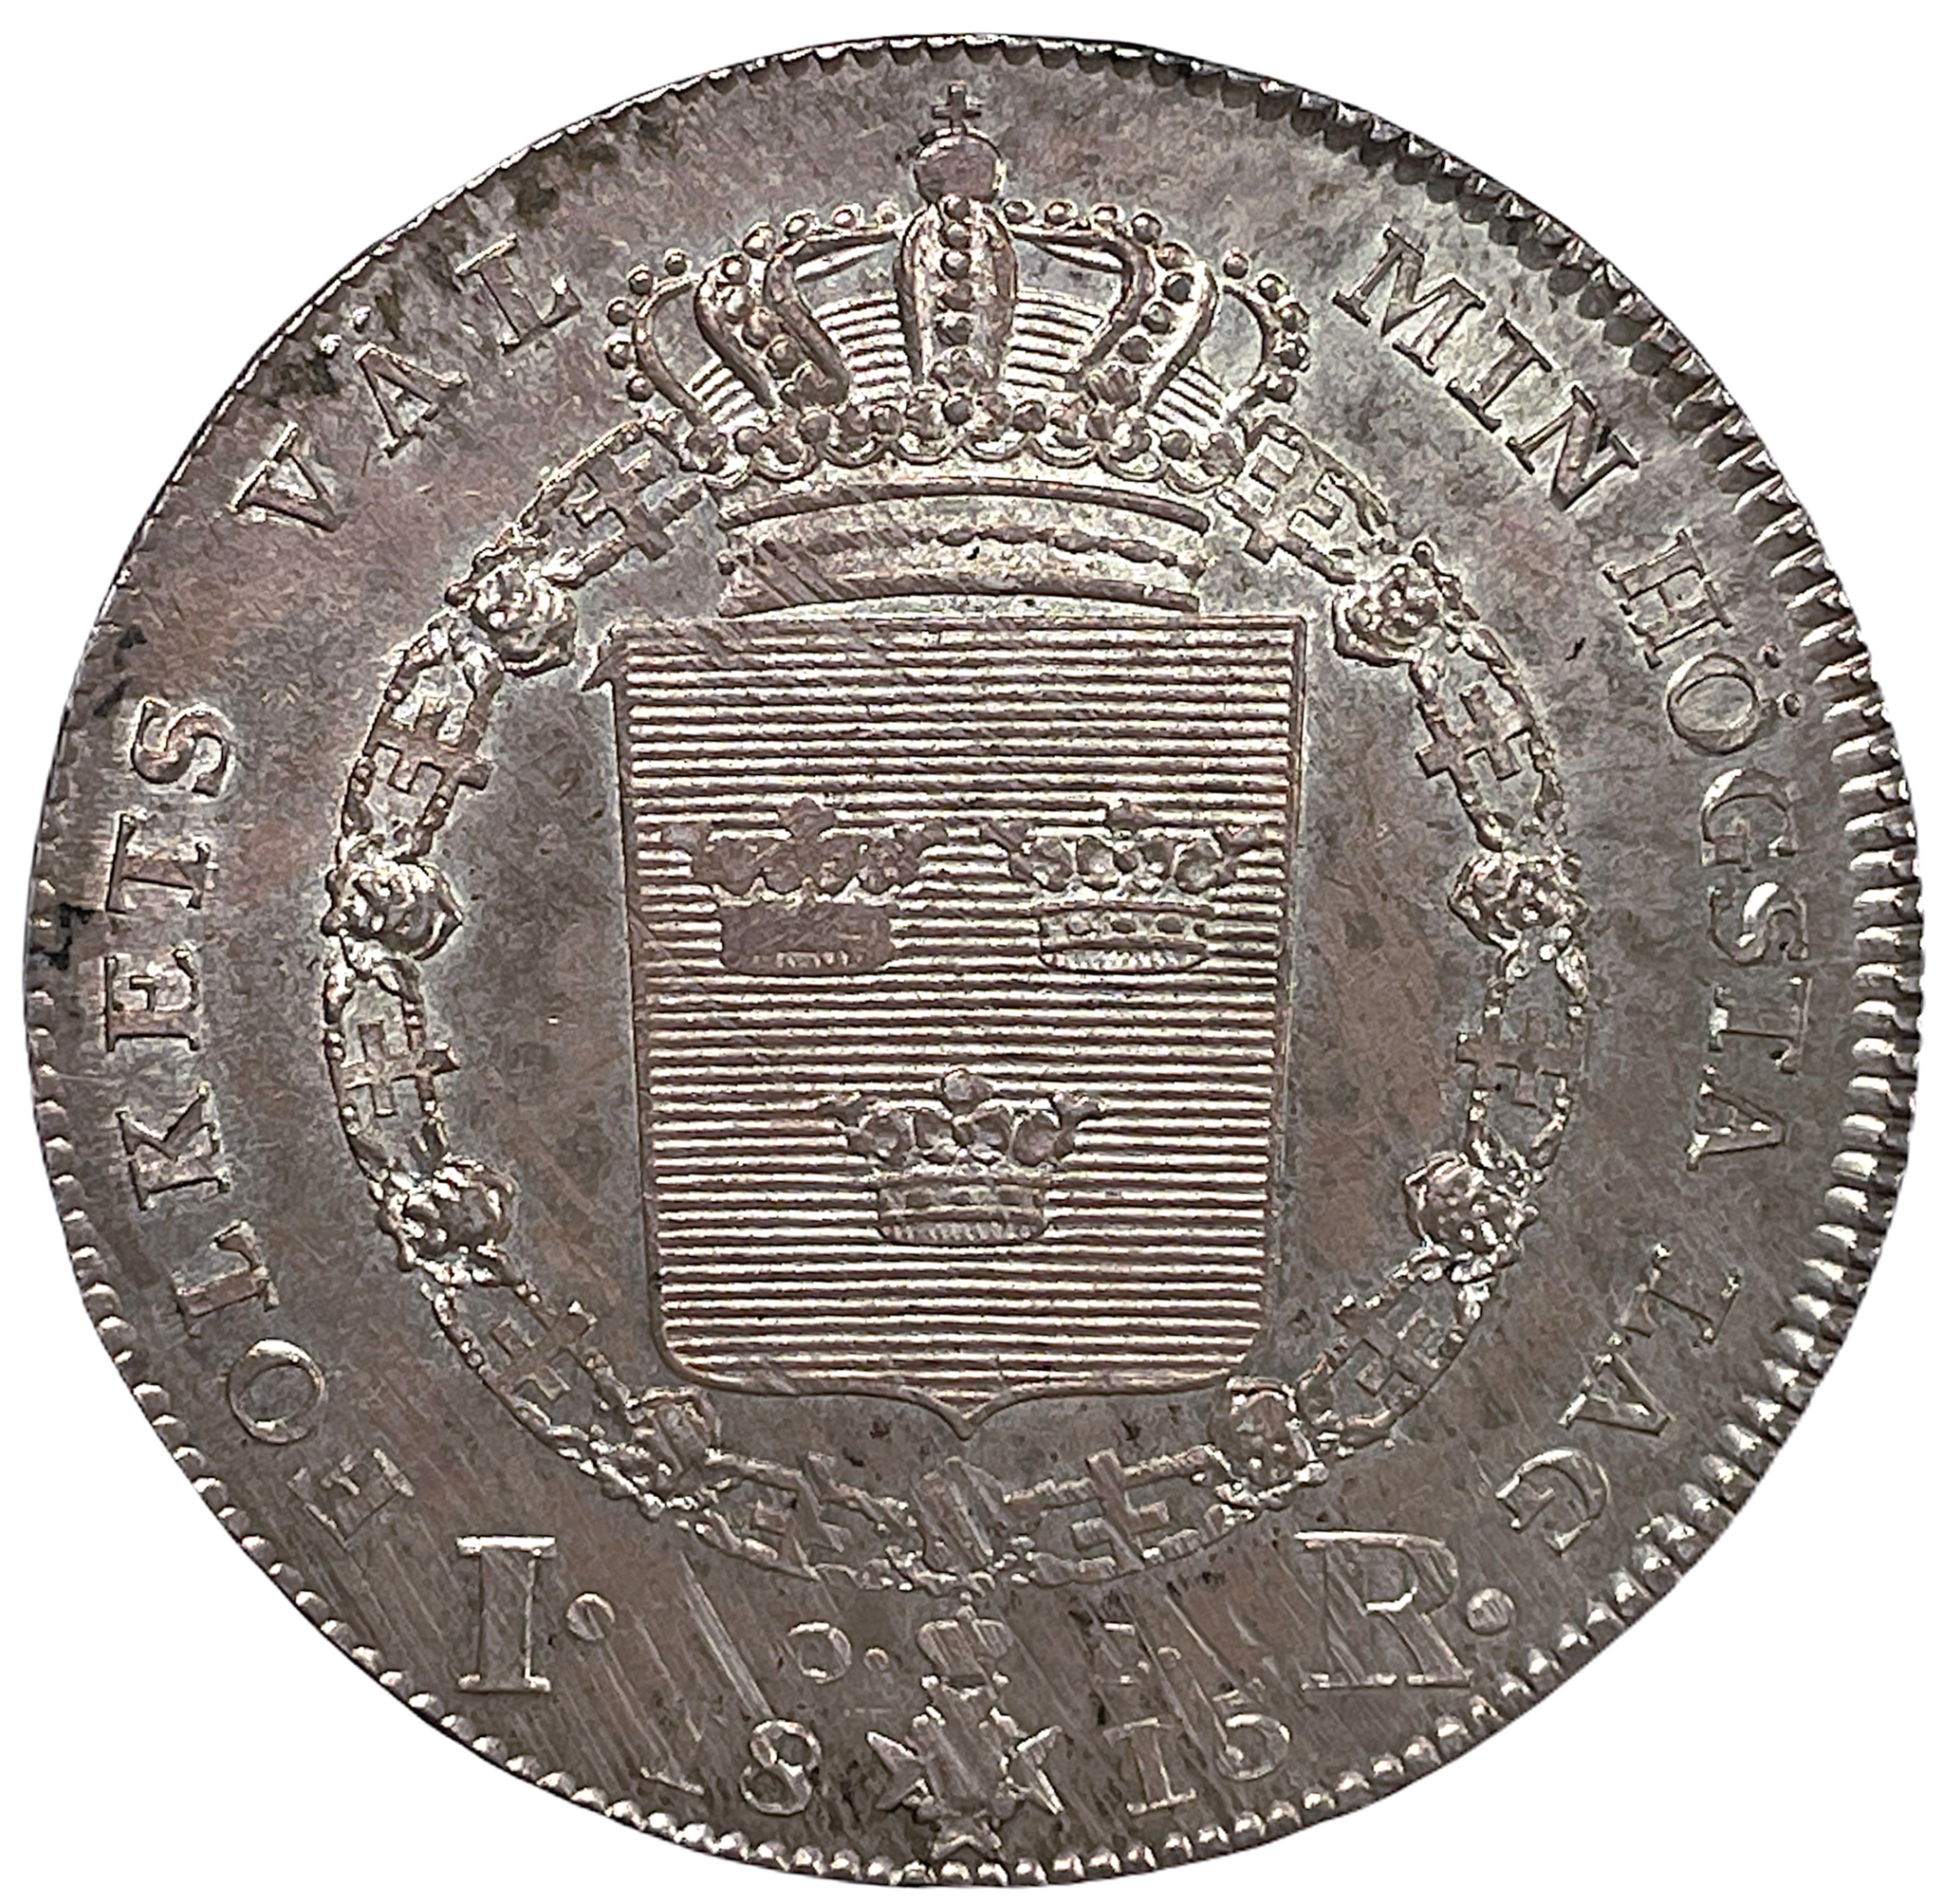 Karl XIII - Riksdaler 1815 - Ovanligt vackert exemplar